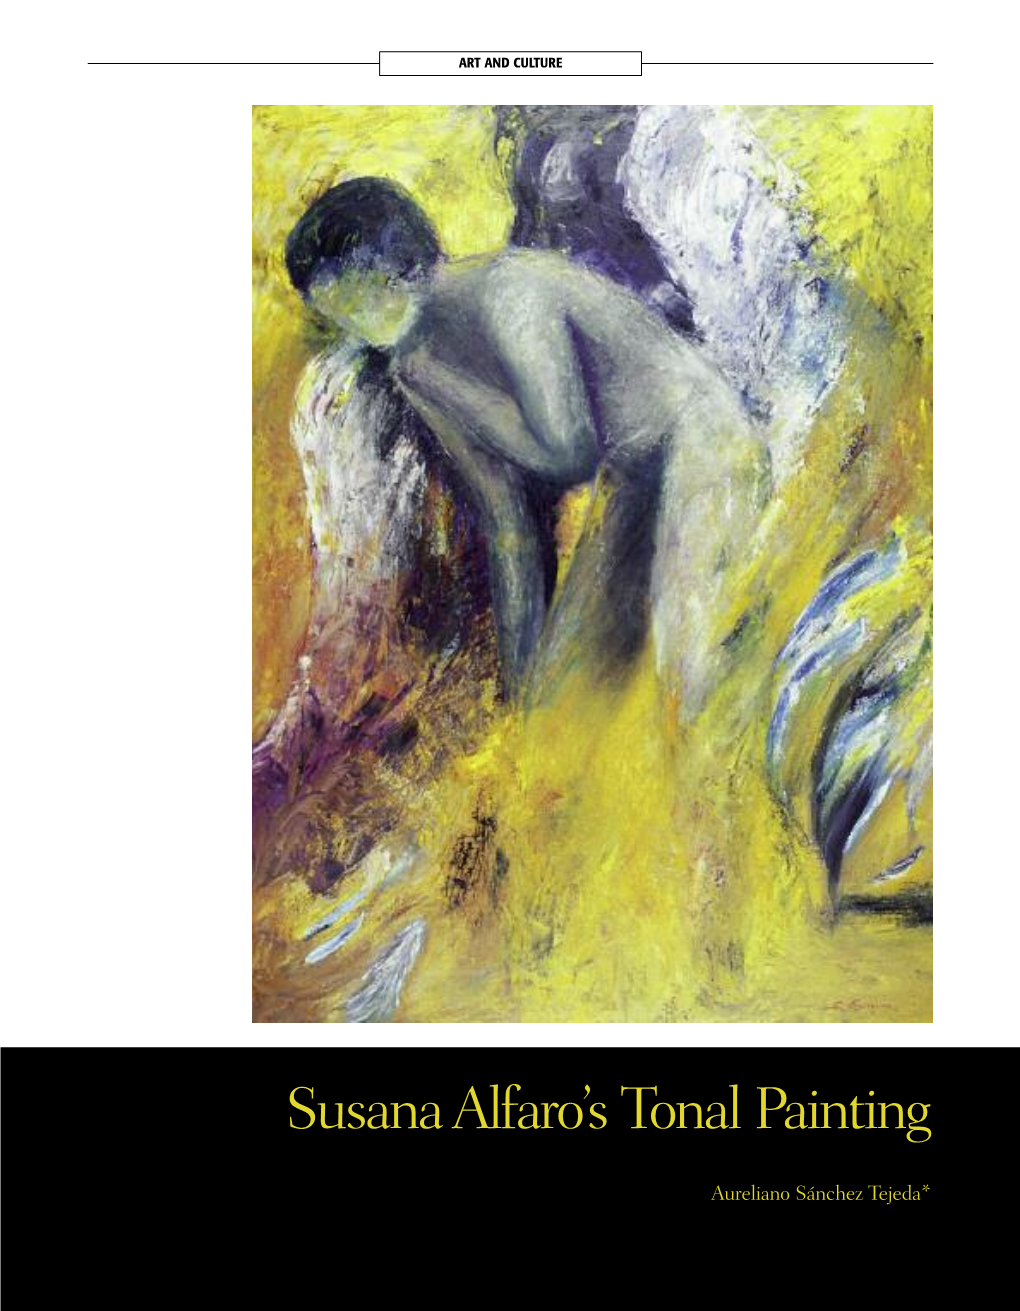 Susana Alfaro's Tonal Painting